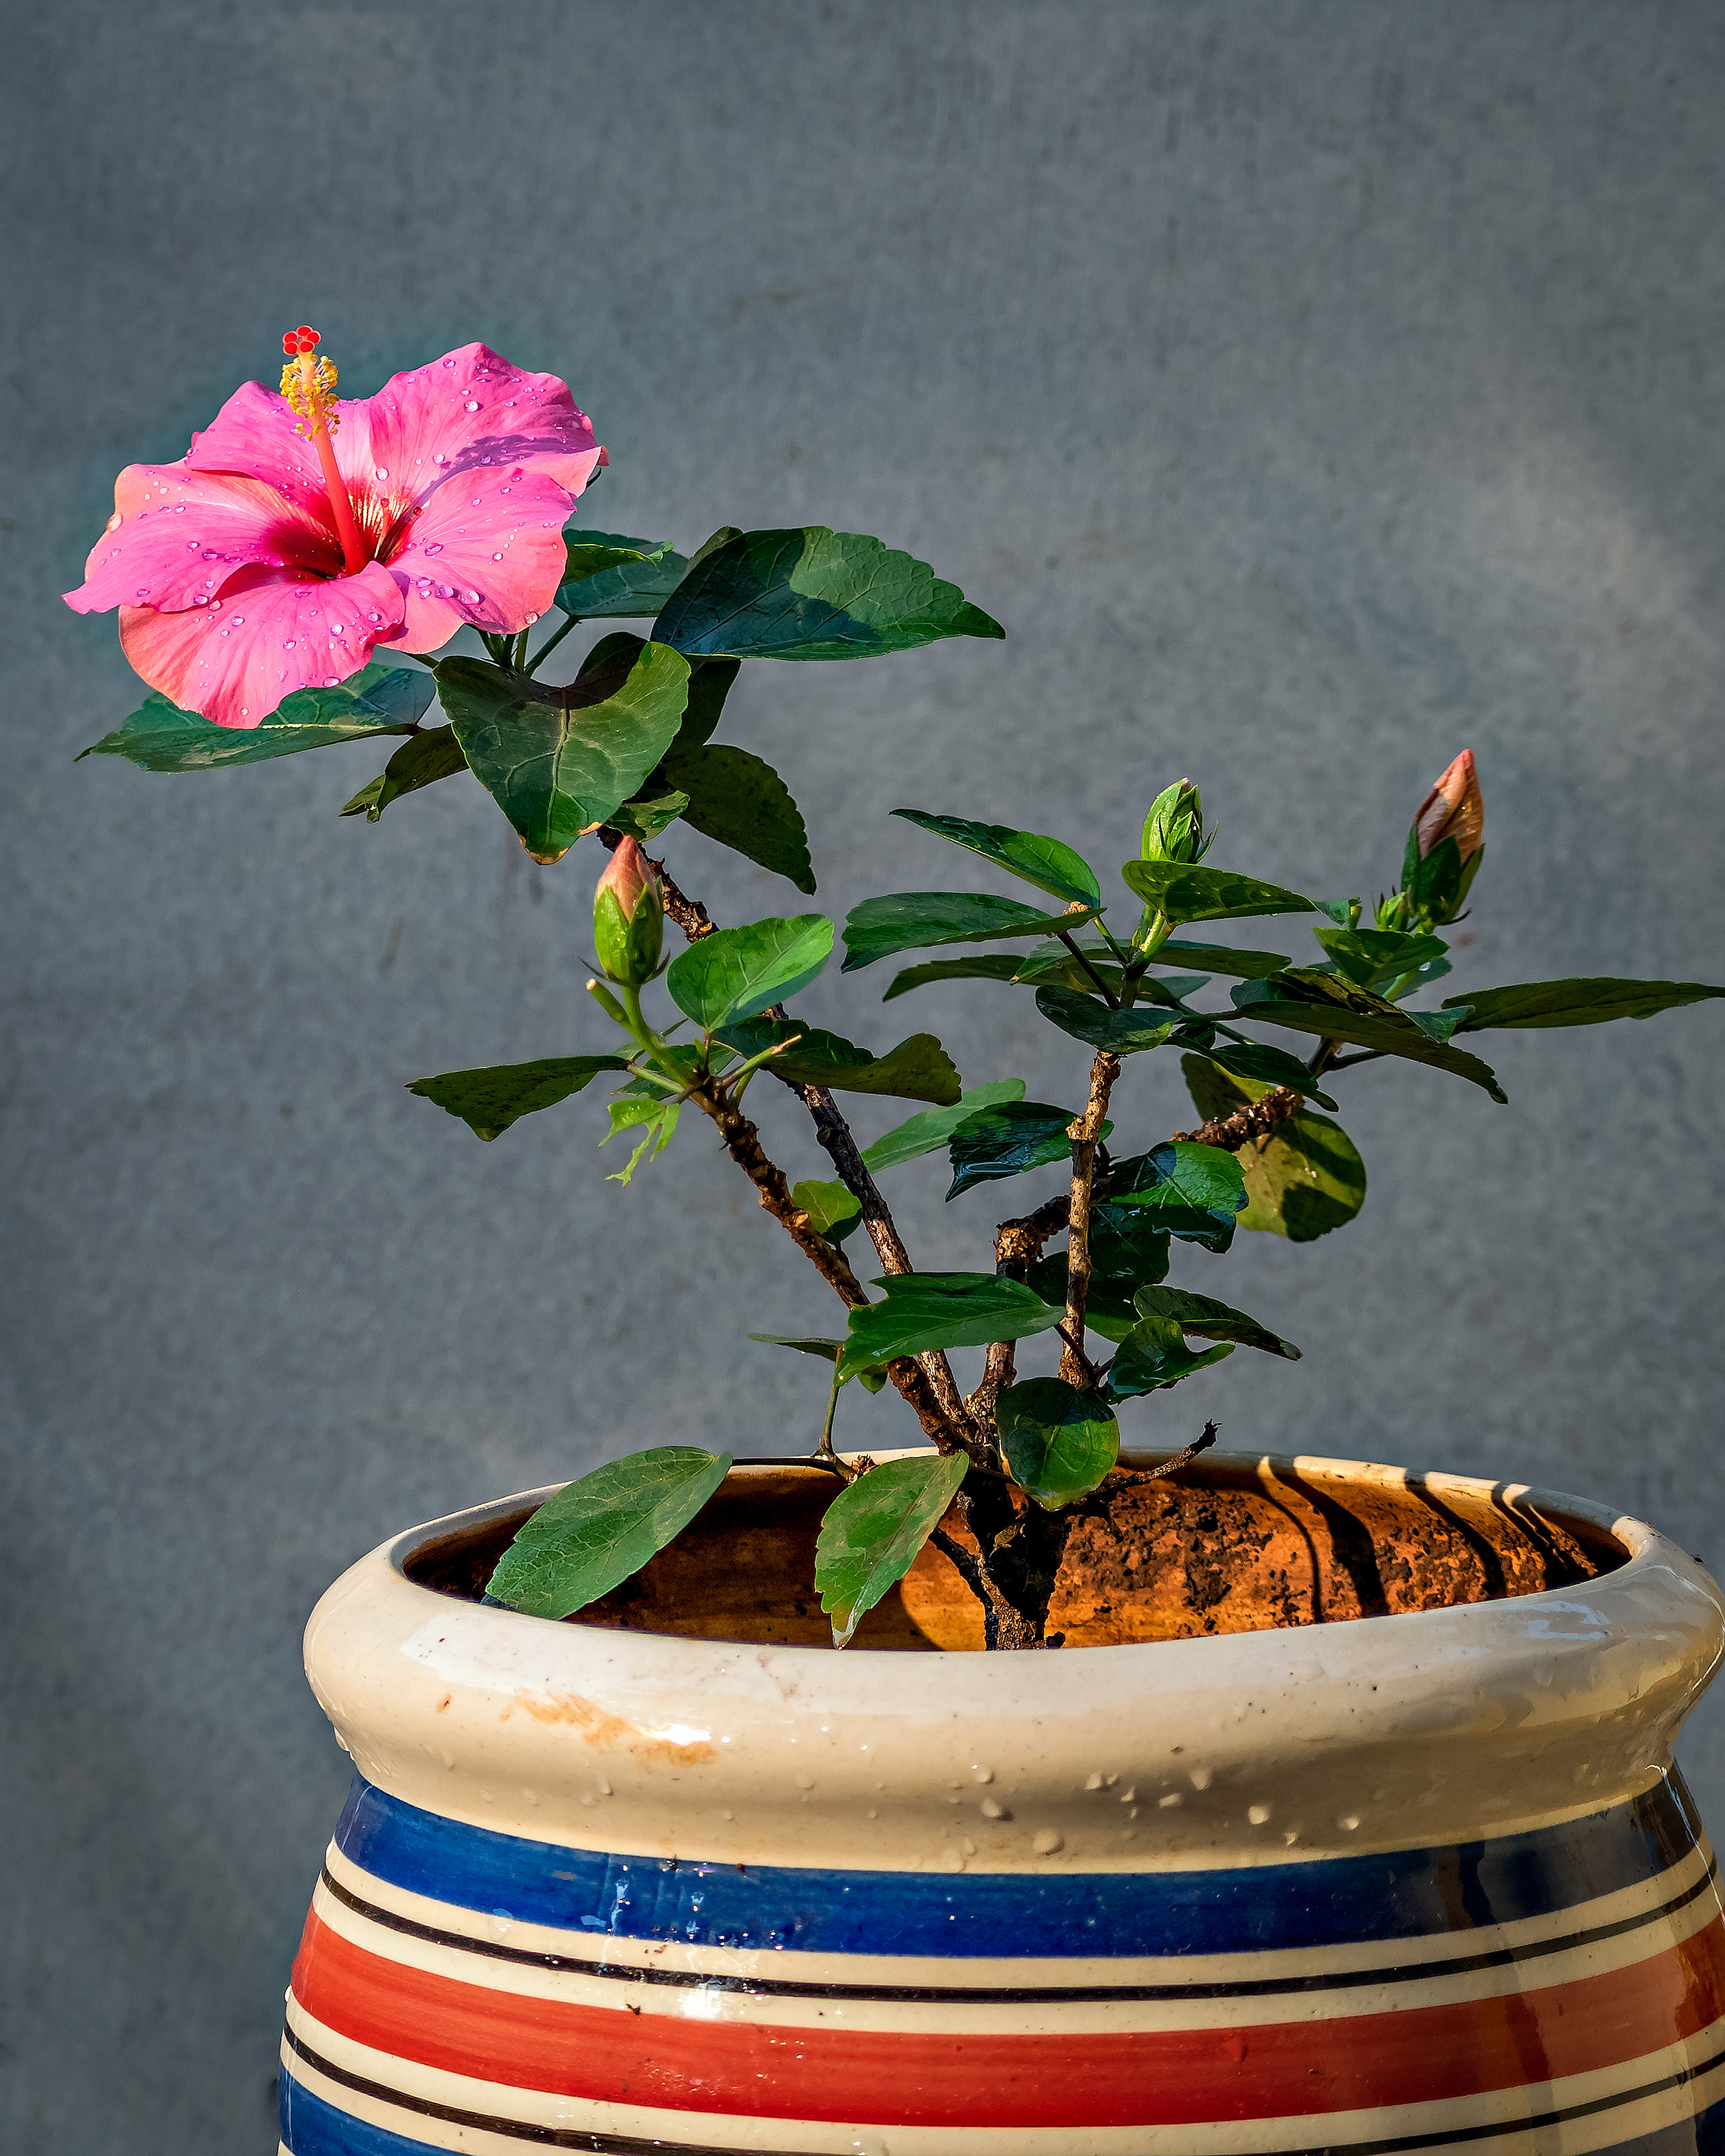  Hibiscus rosa-sinensis